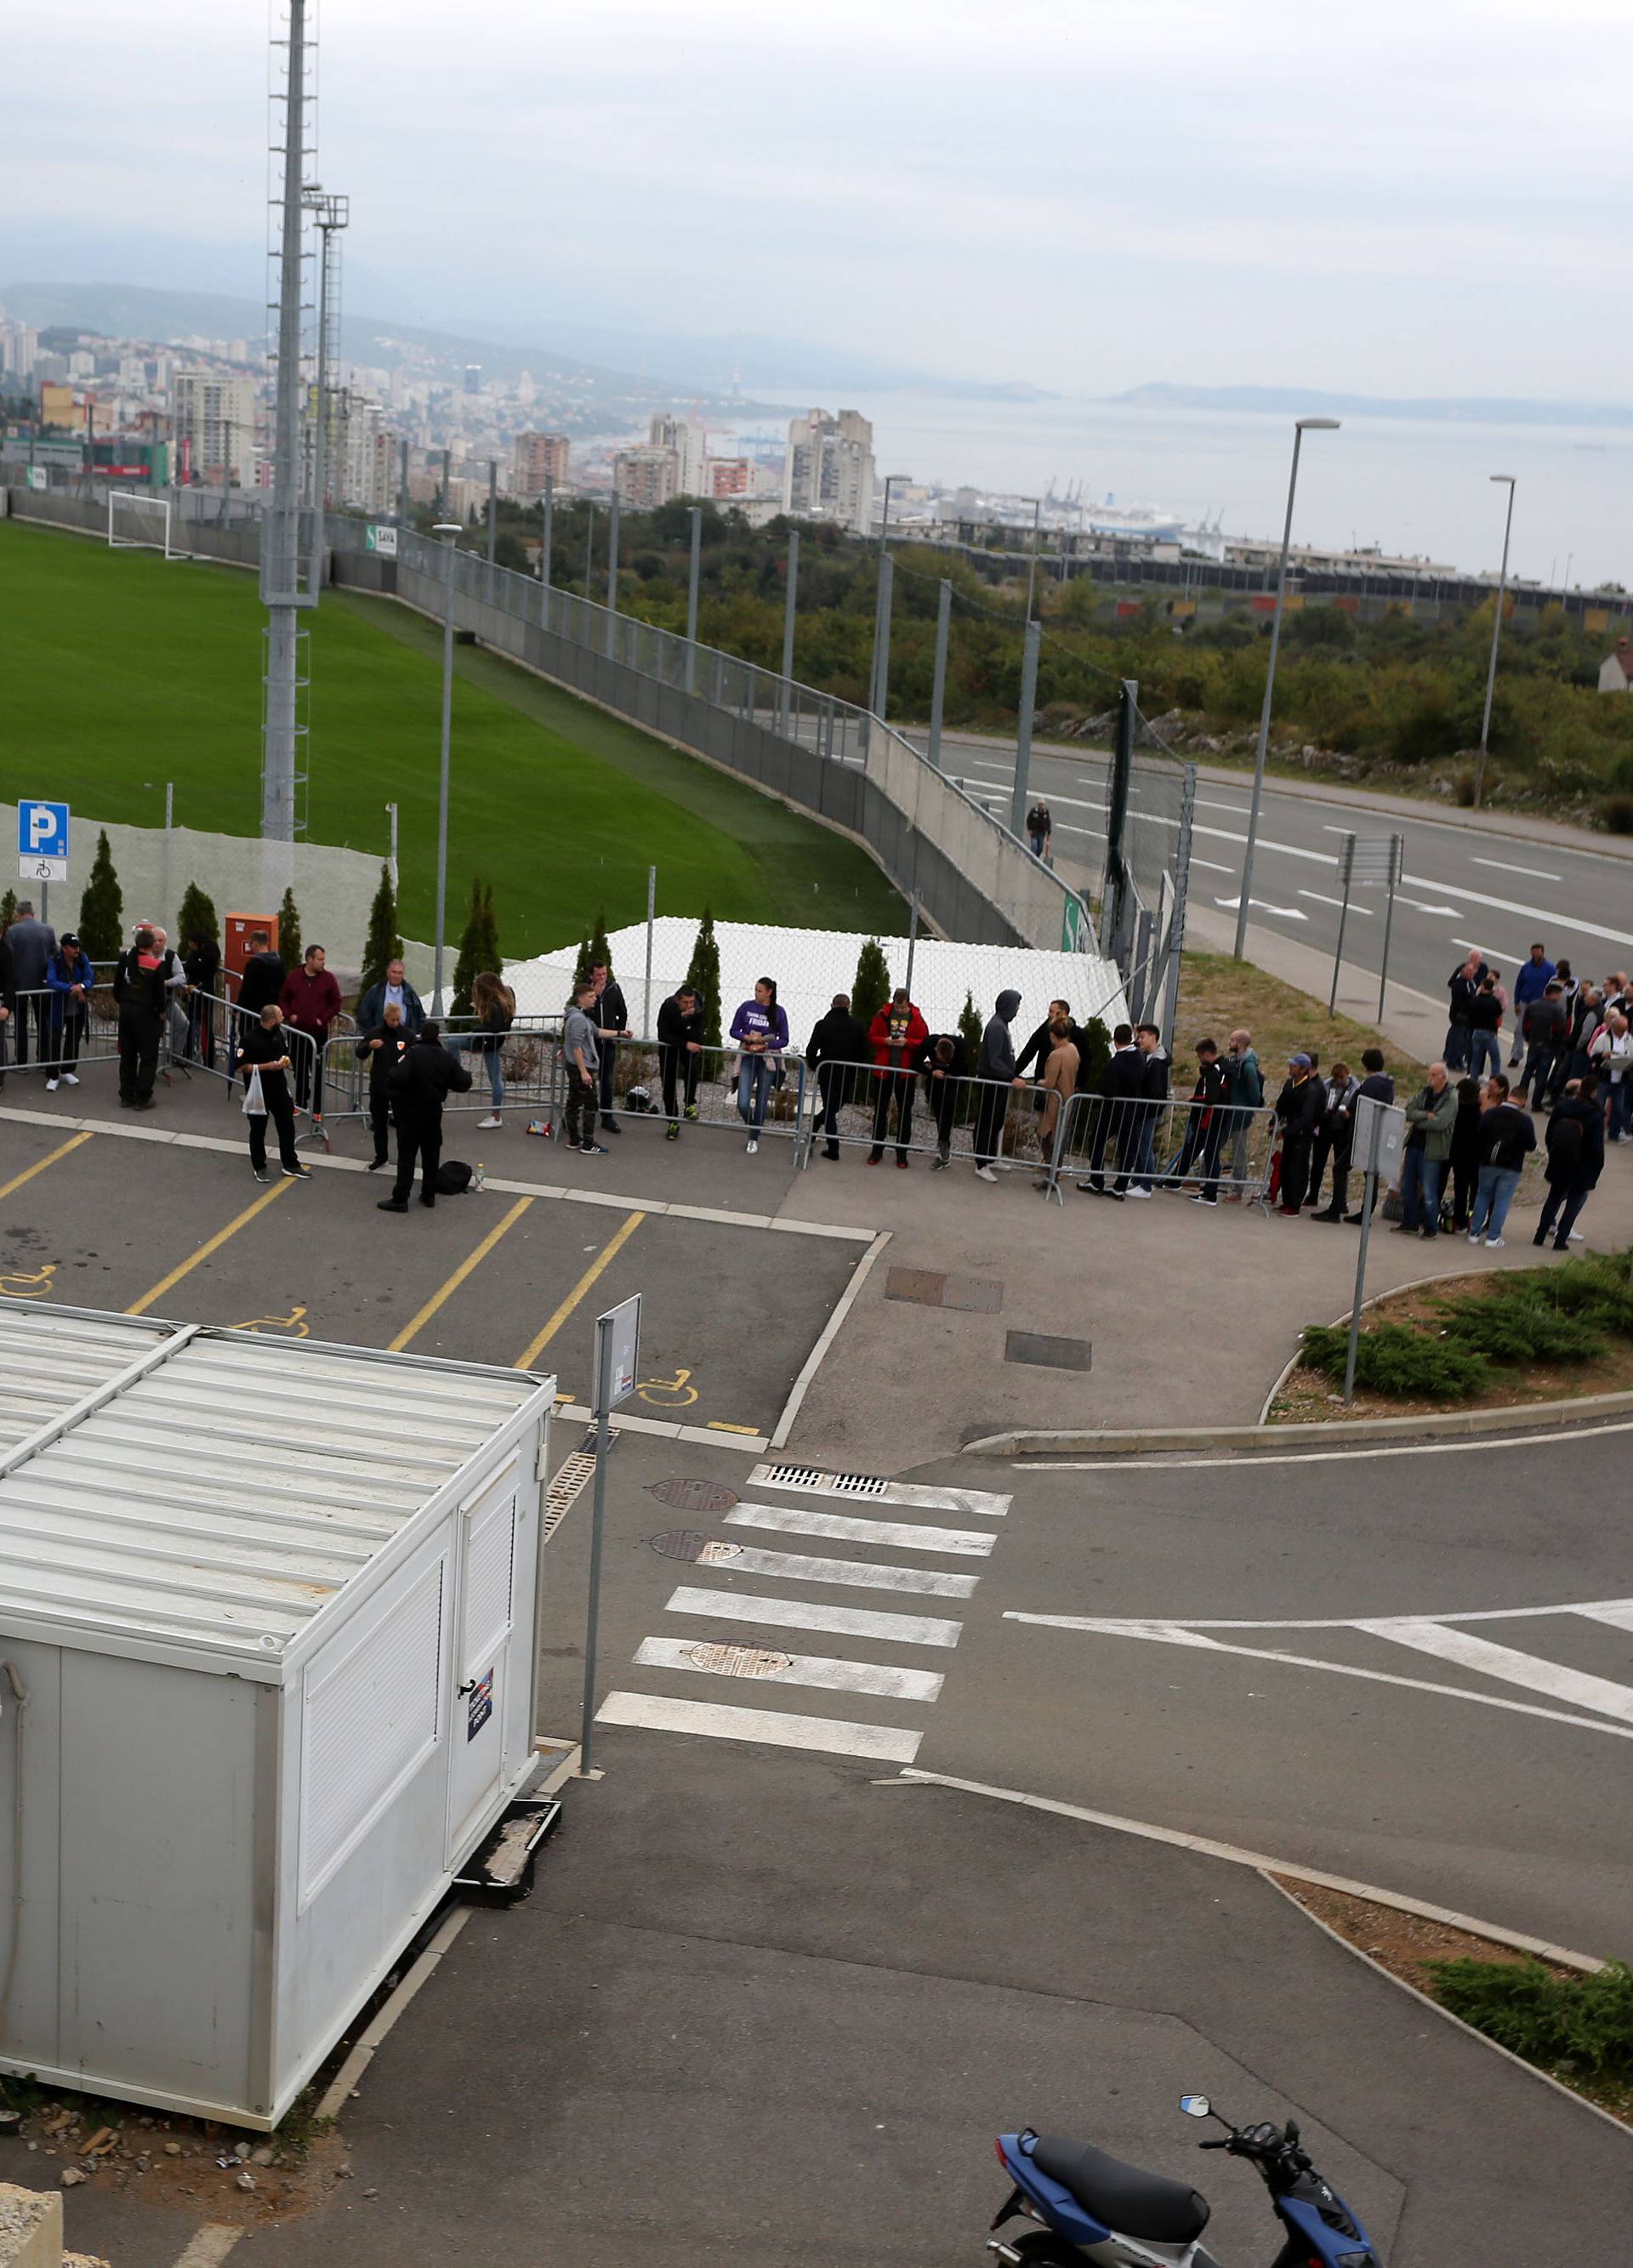 Navijači satima čekaju na ulaznicu za utakmicu Hrvatska - Slovačka